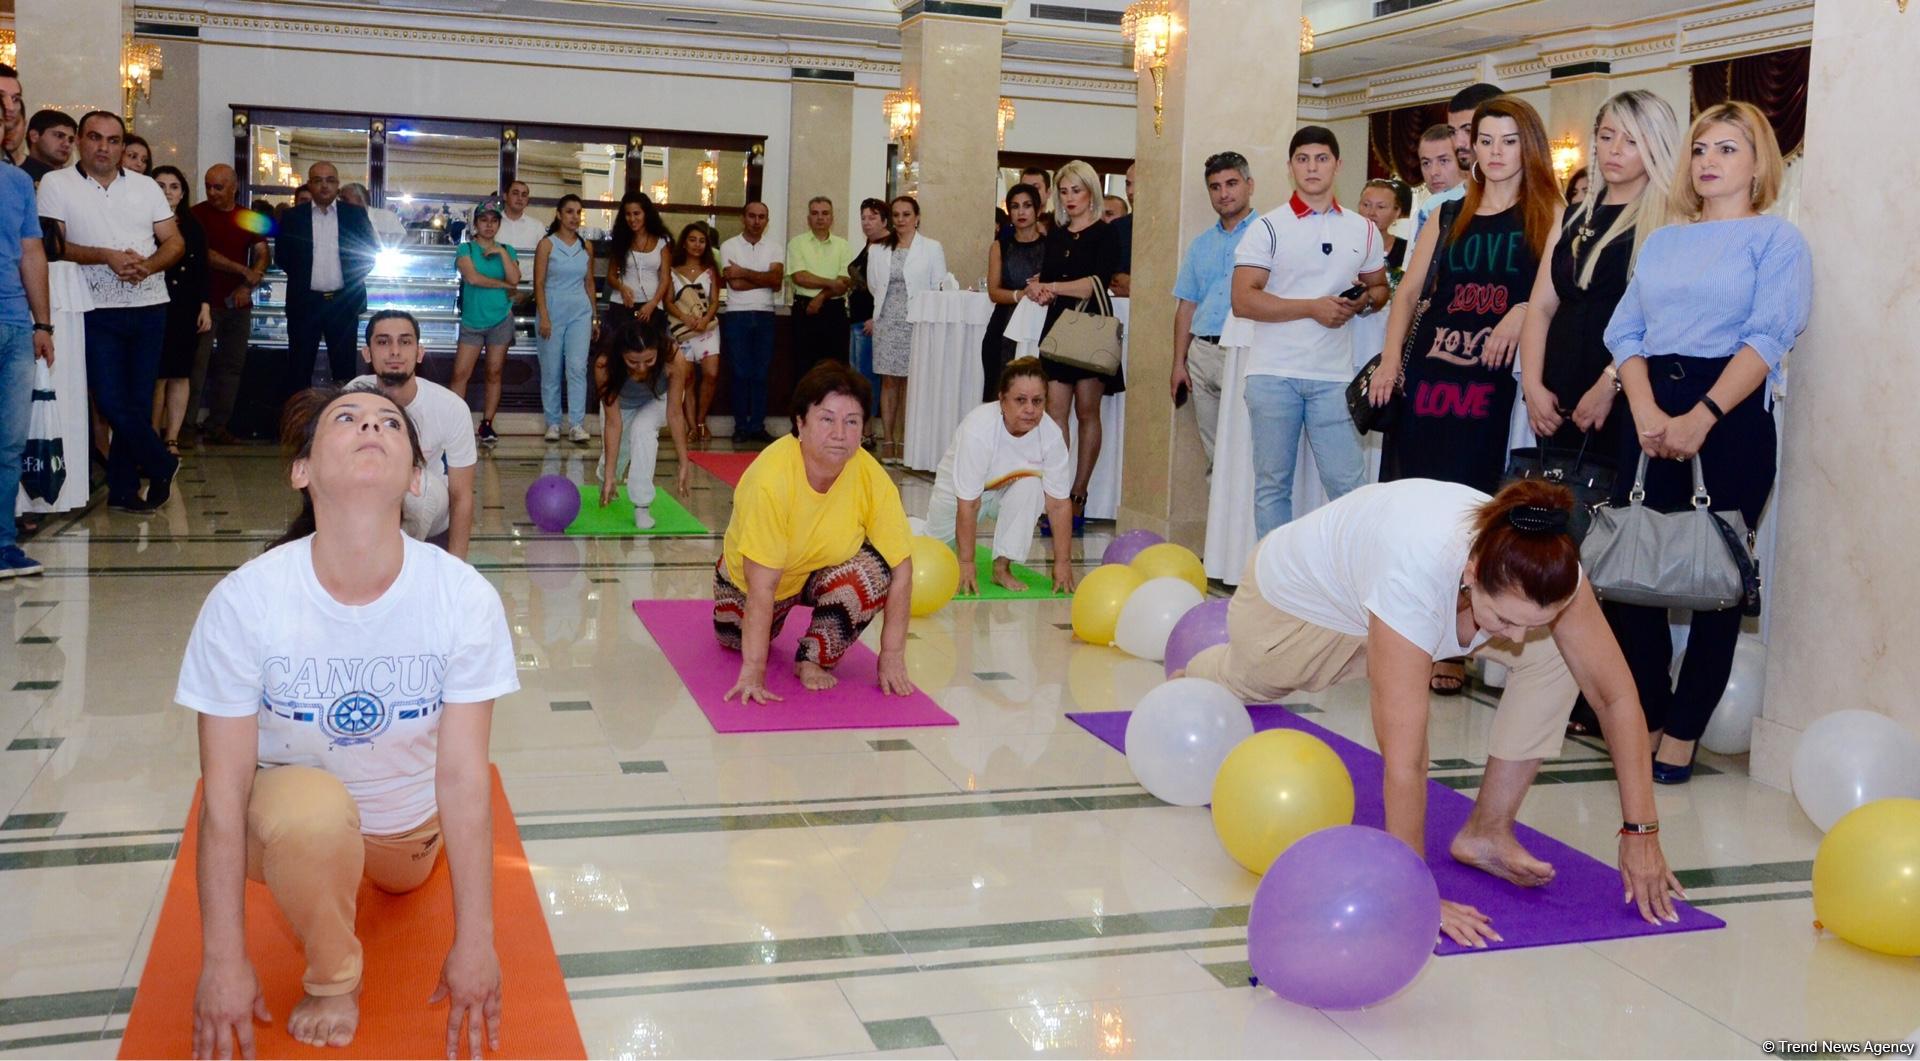 В Баку открылась "Школа классической йоги" (ФОТО)